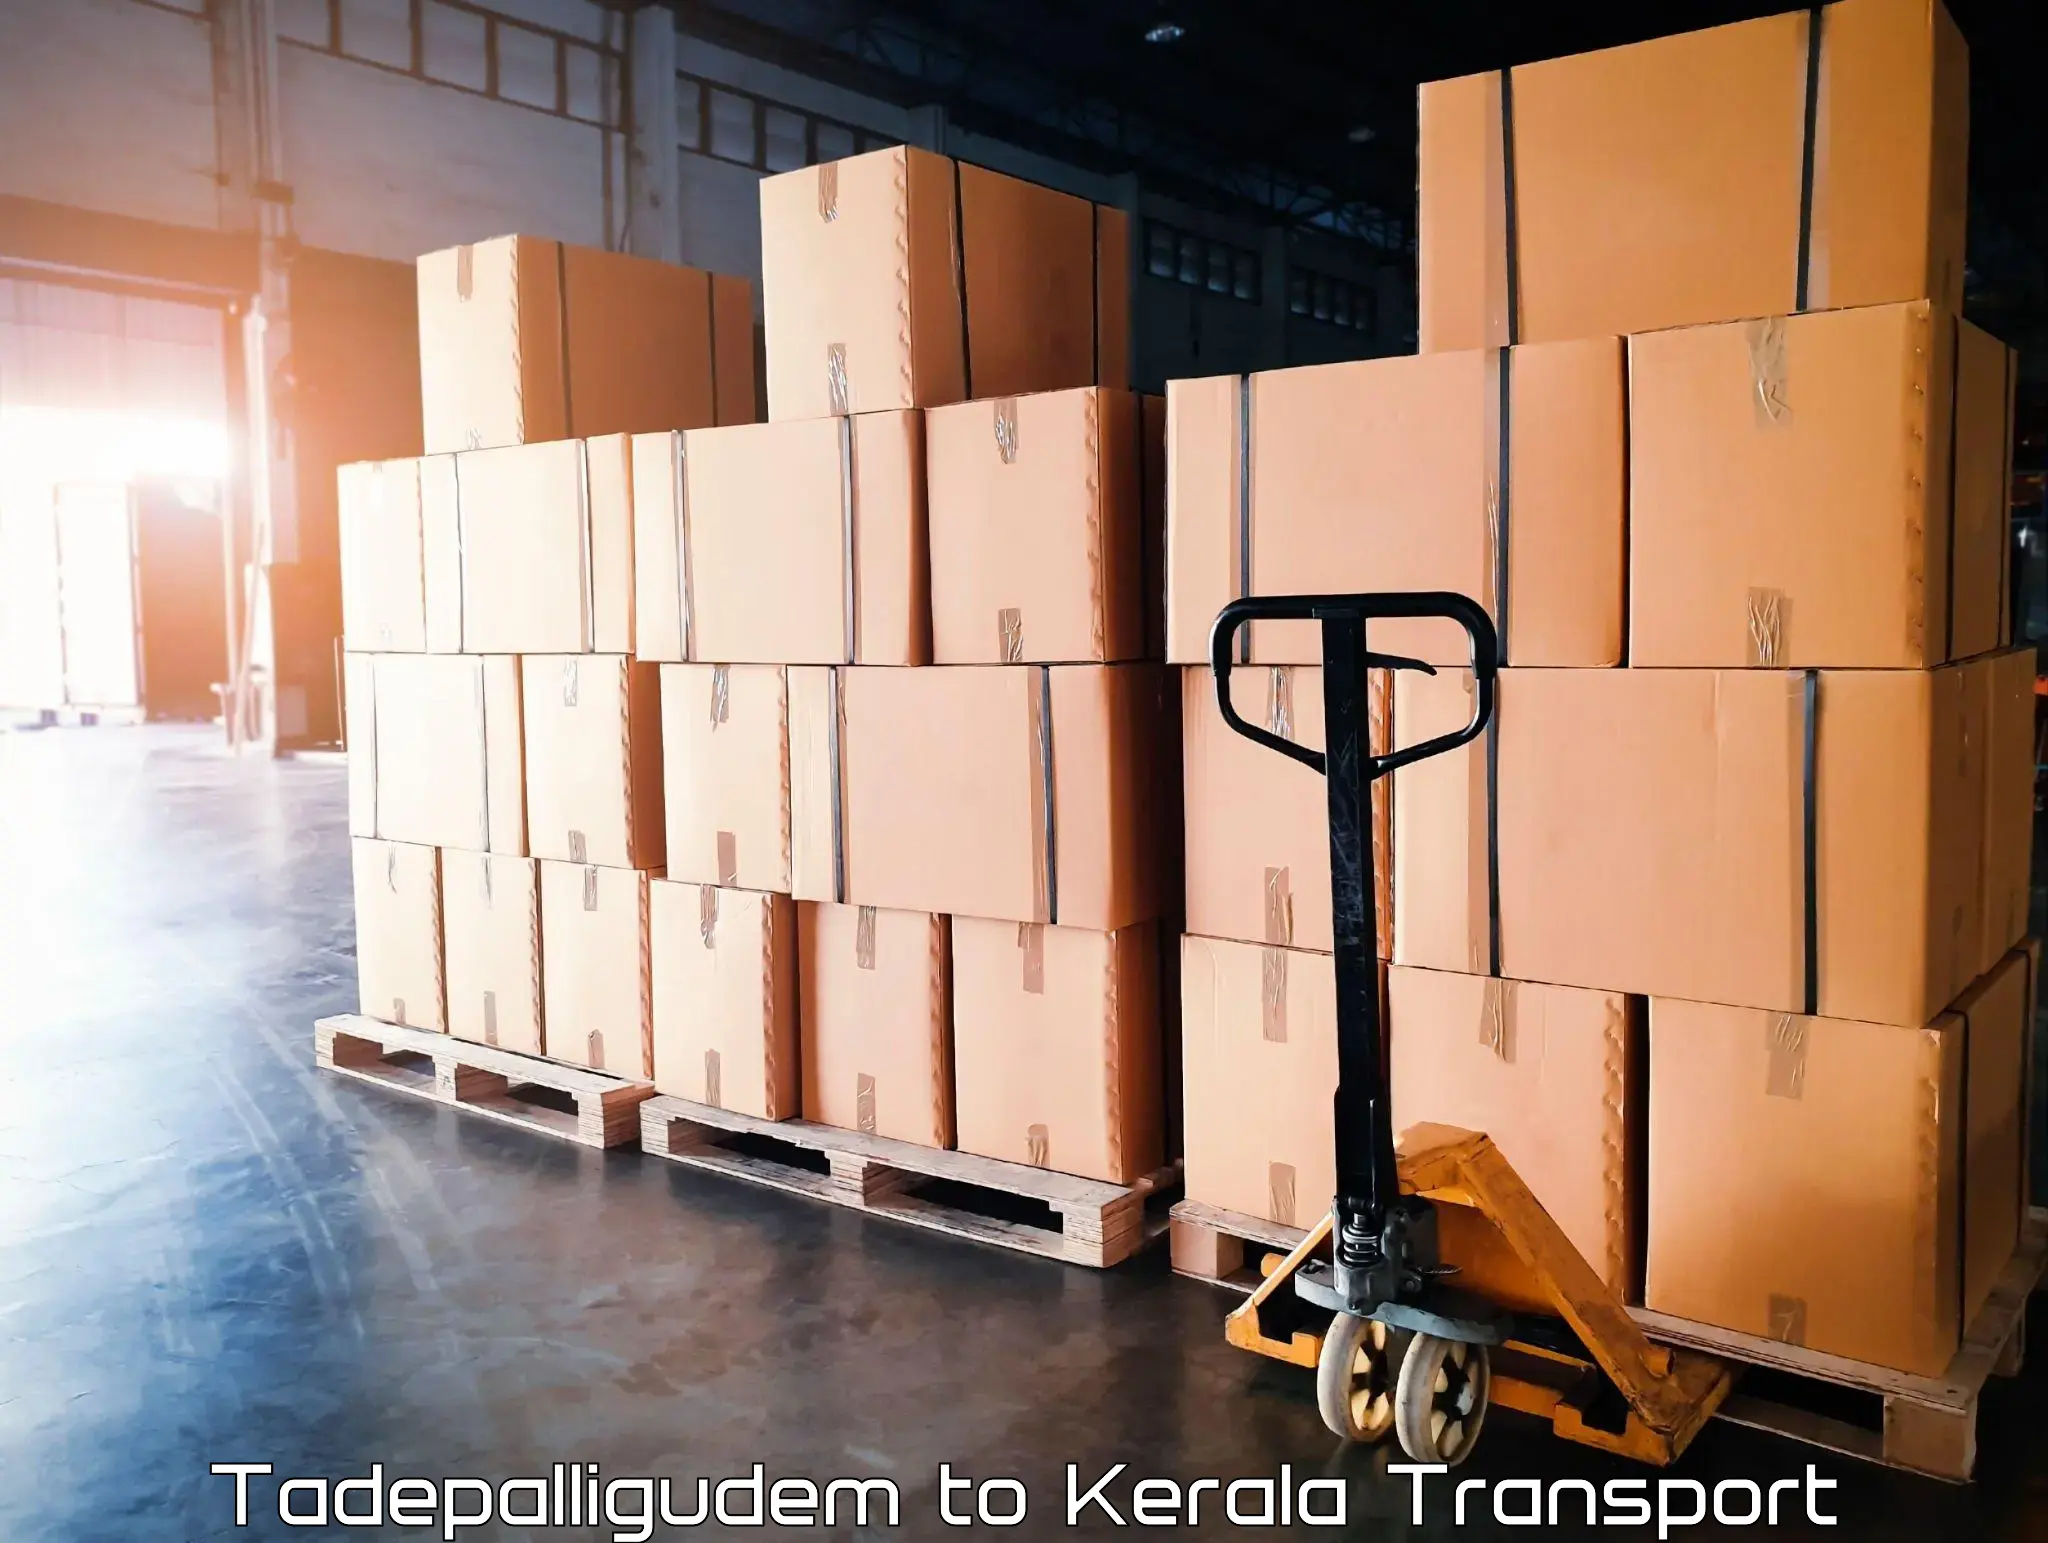 Nearest transport service Tadepalligudem to Sreekandapuram